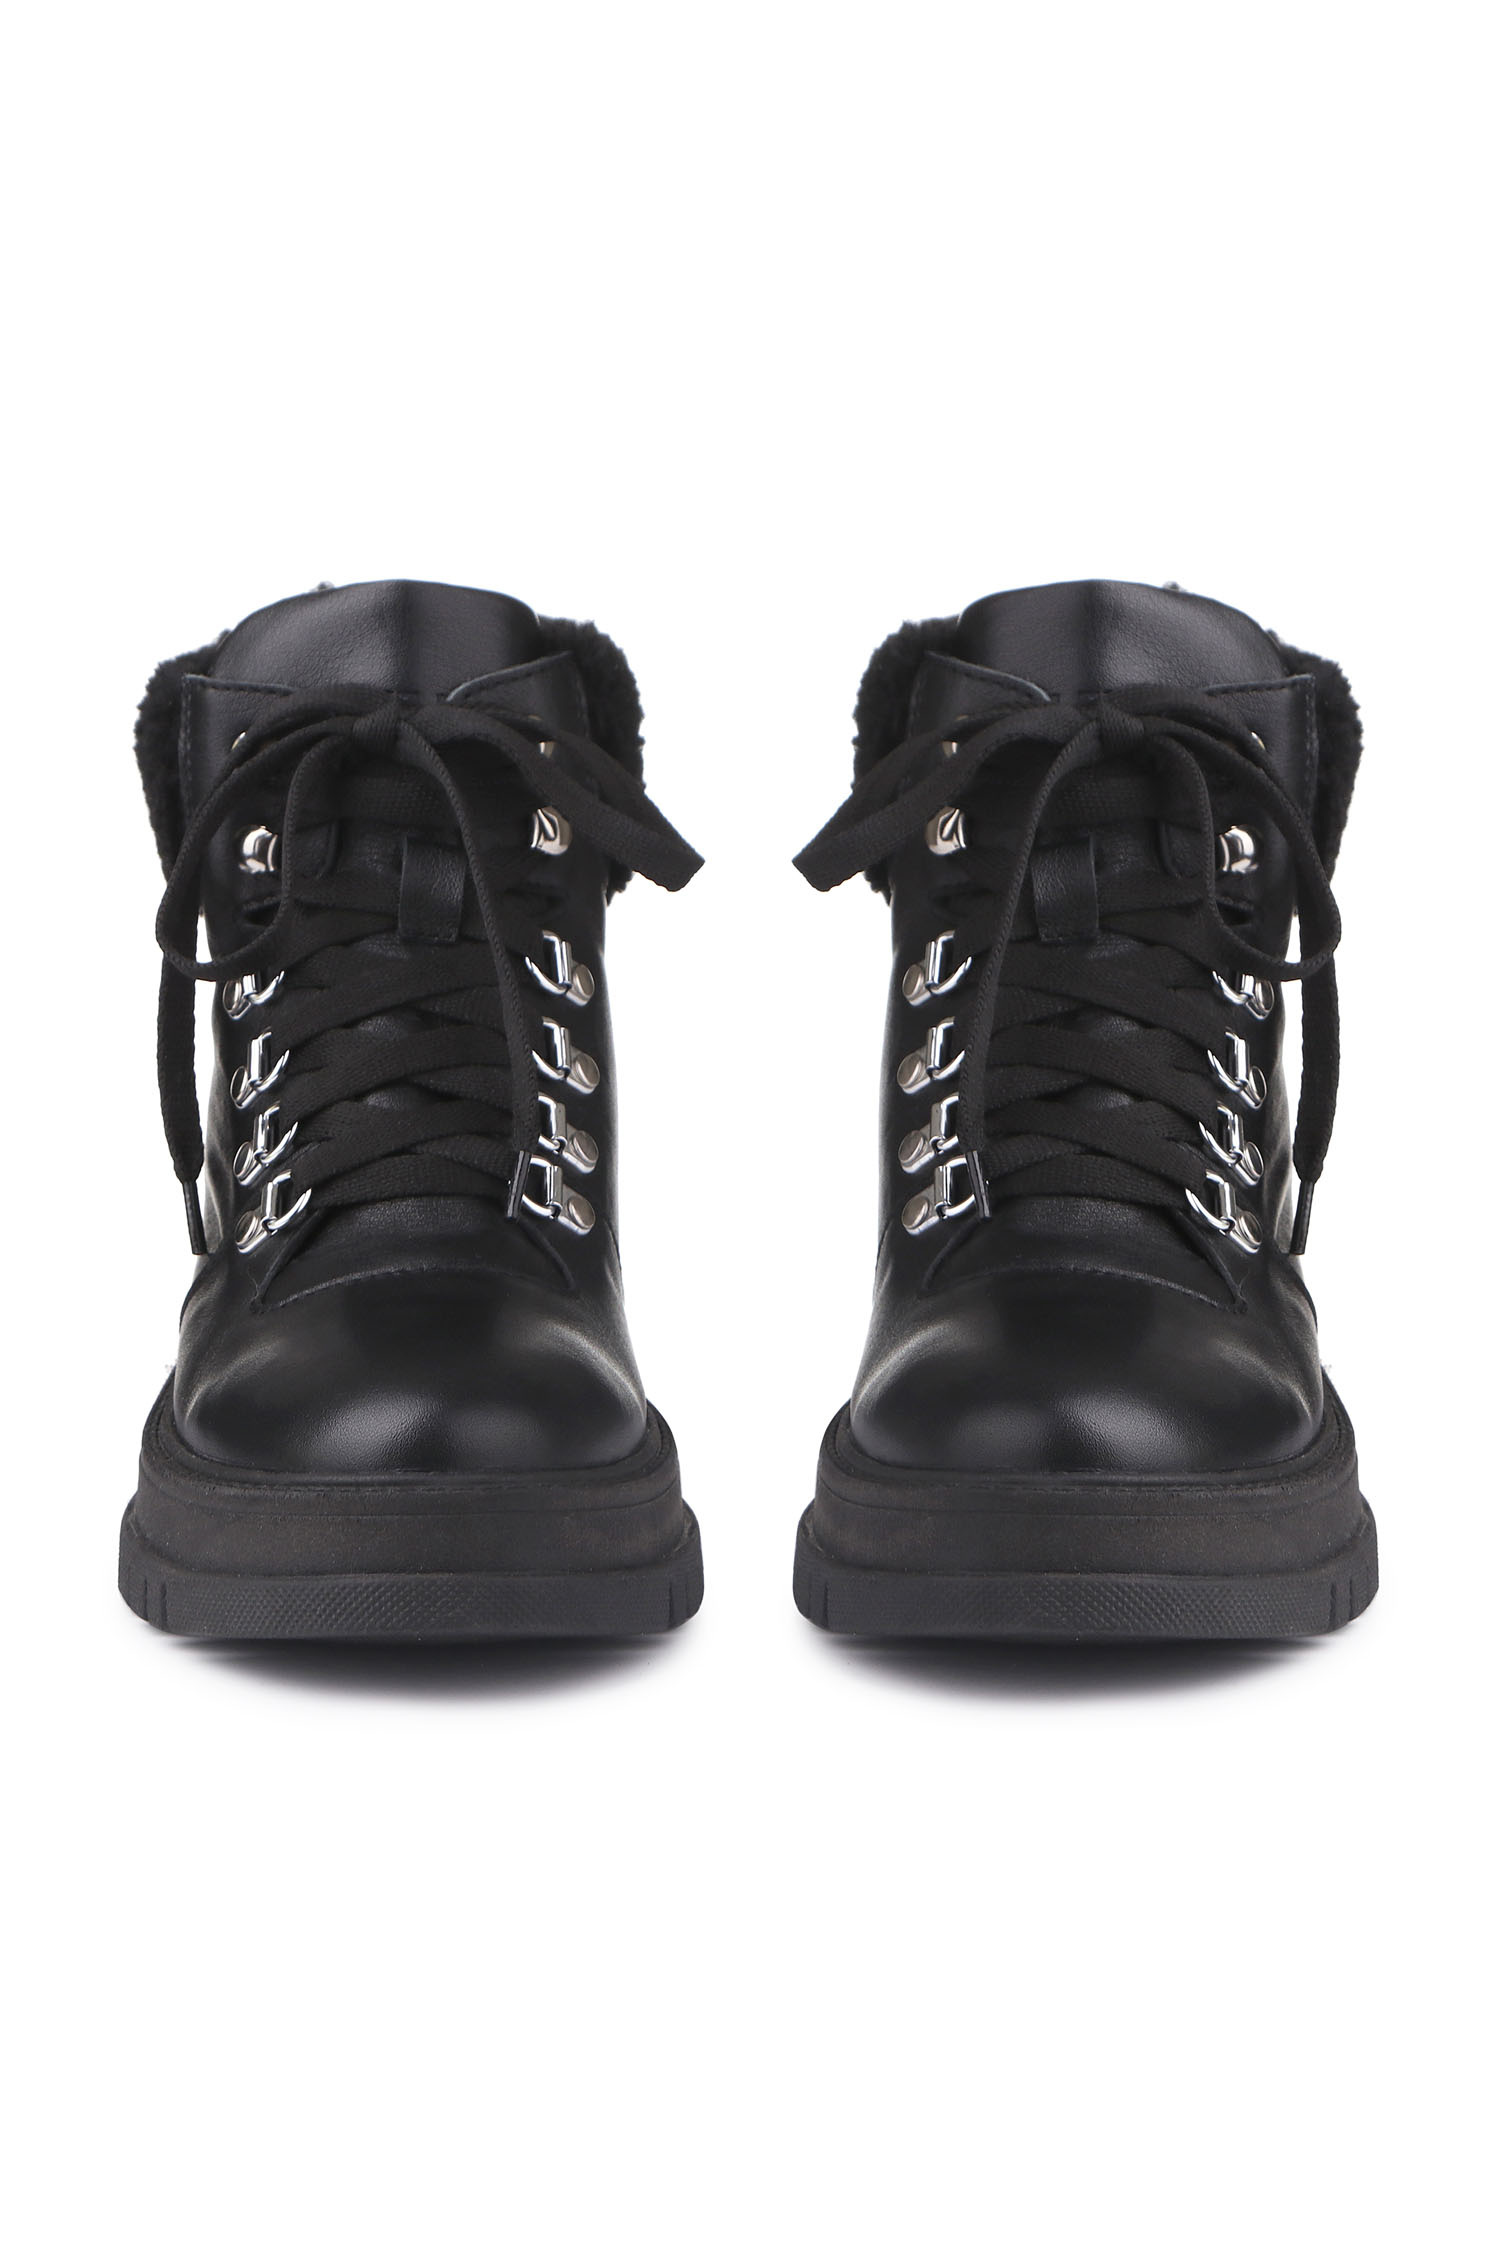 Зимові черевики Hiking boots чорні з чорним хутром - THE LACE photo 123285